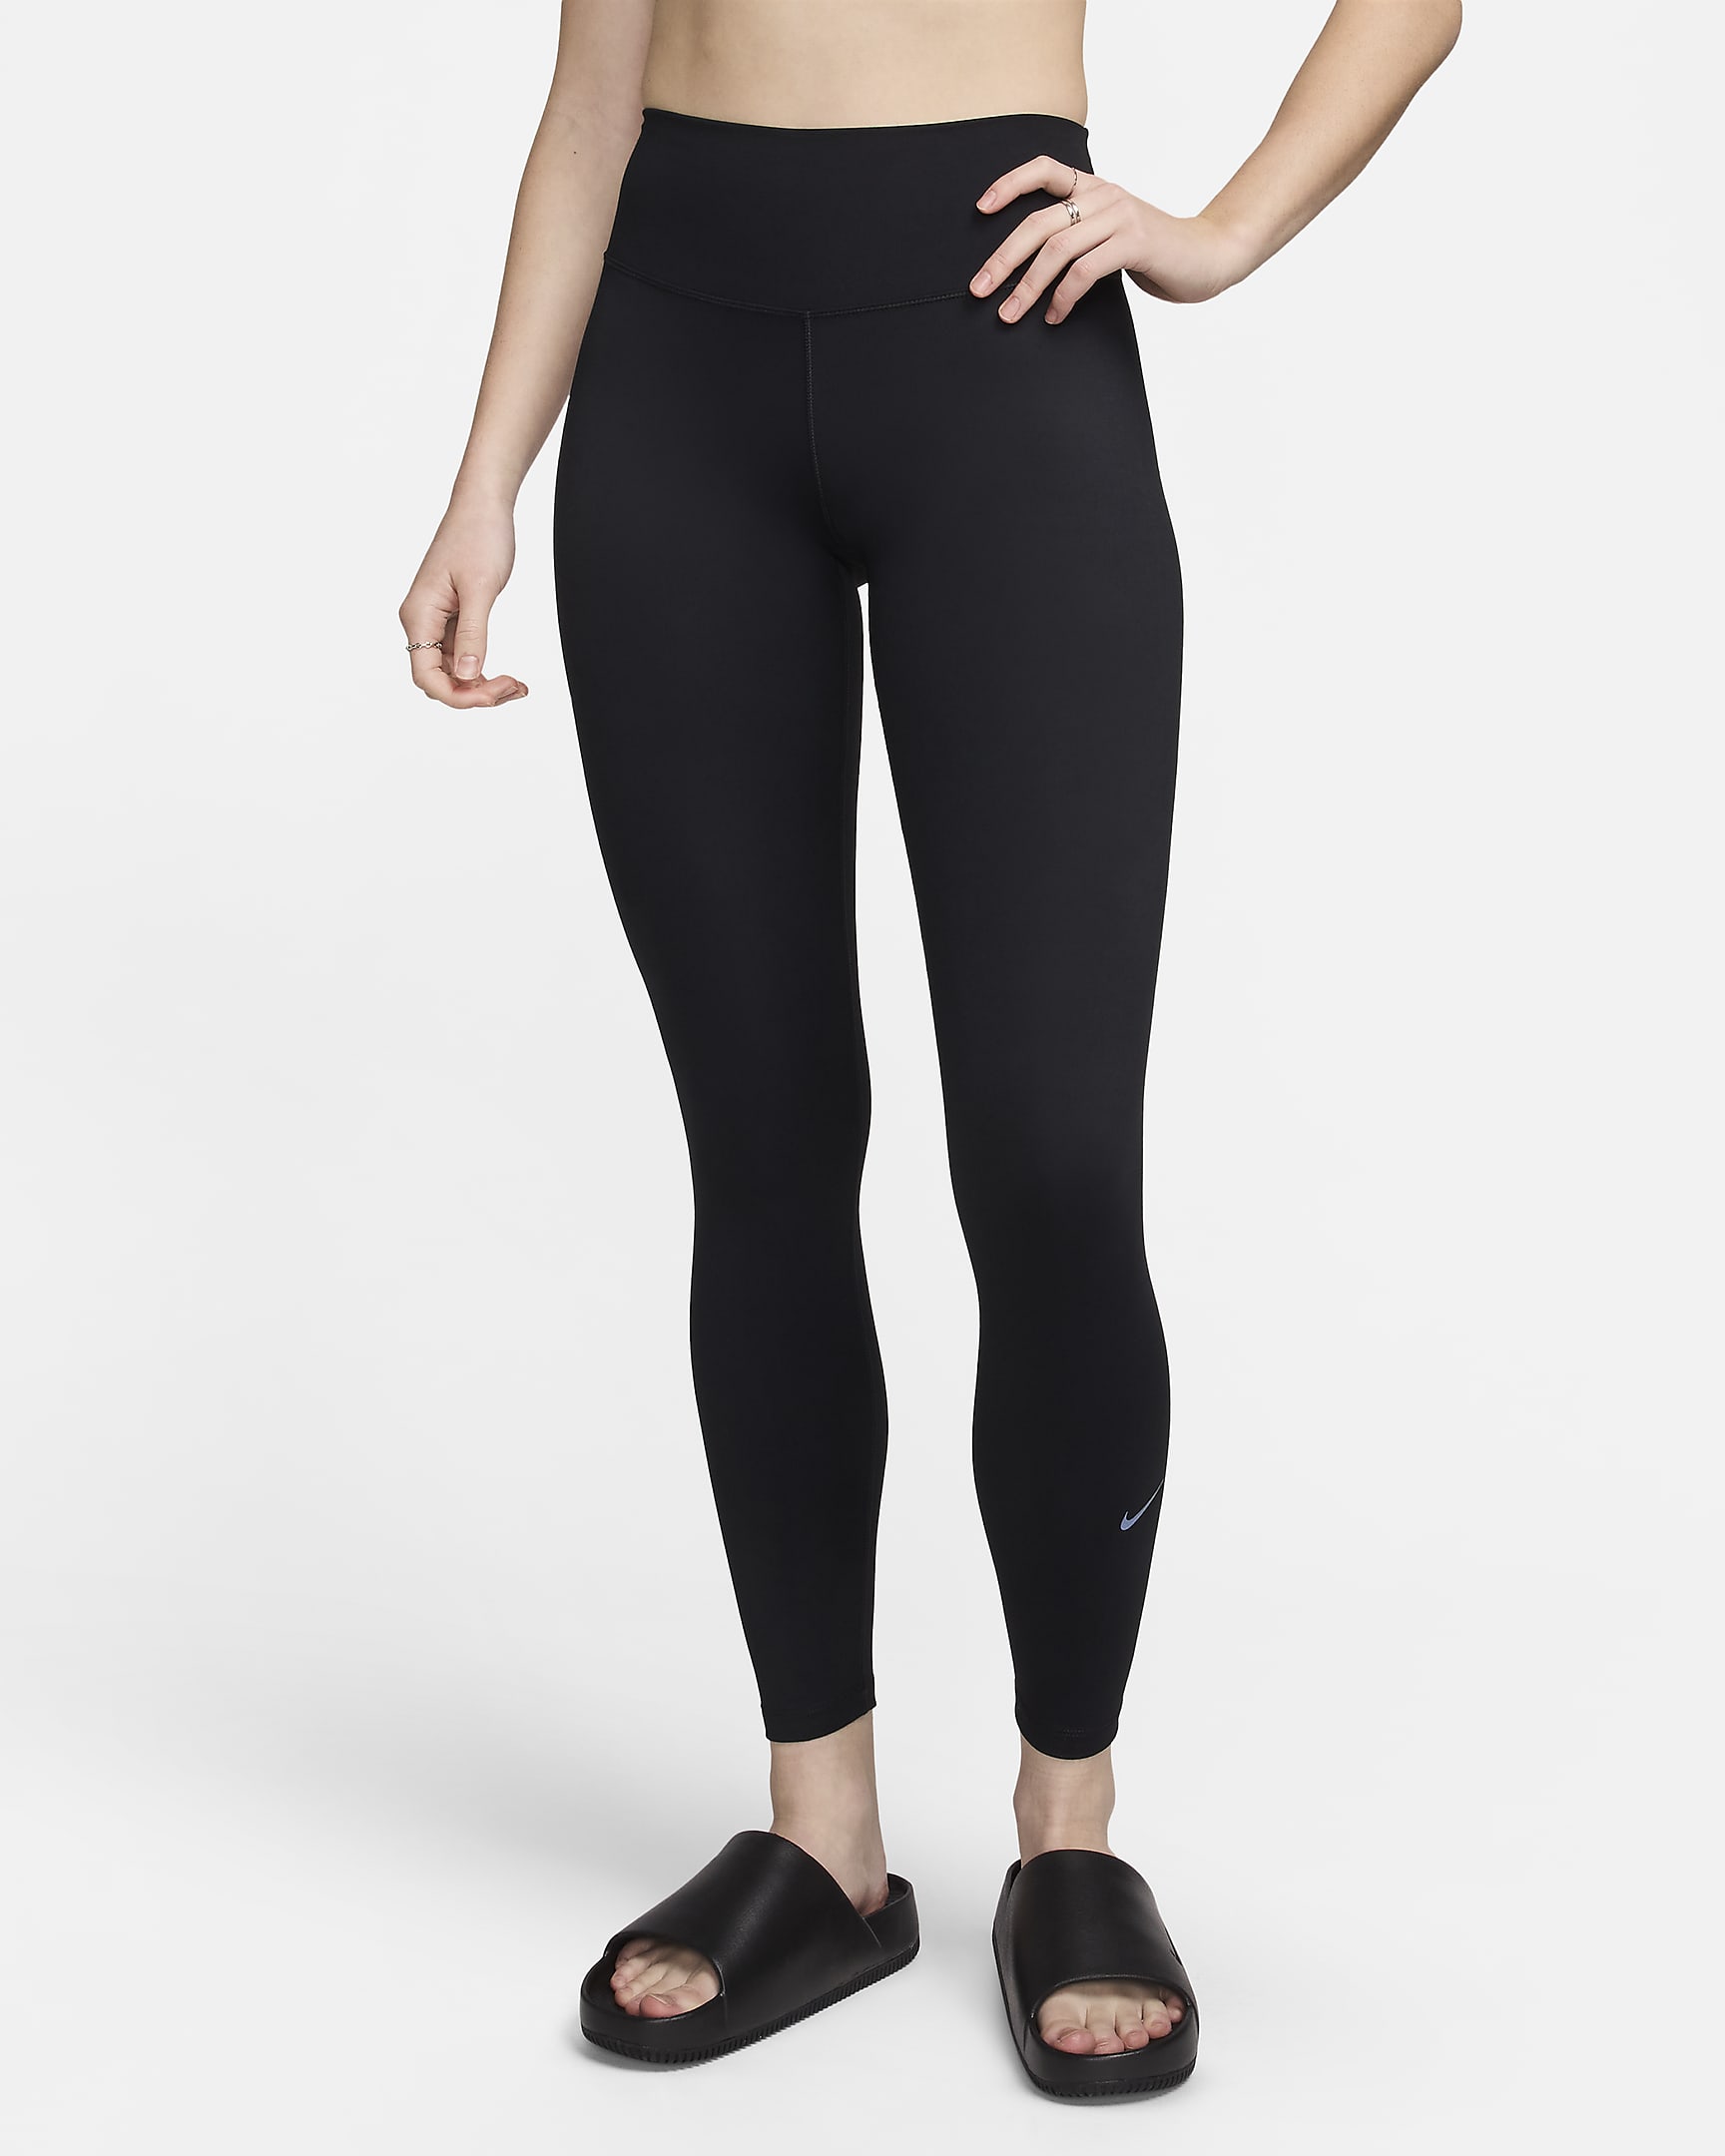 Nike One Women's High-Waisted Full-Length Leggings - Black/Black